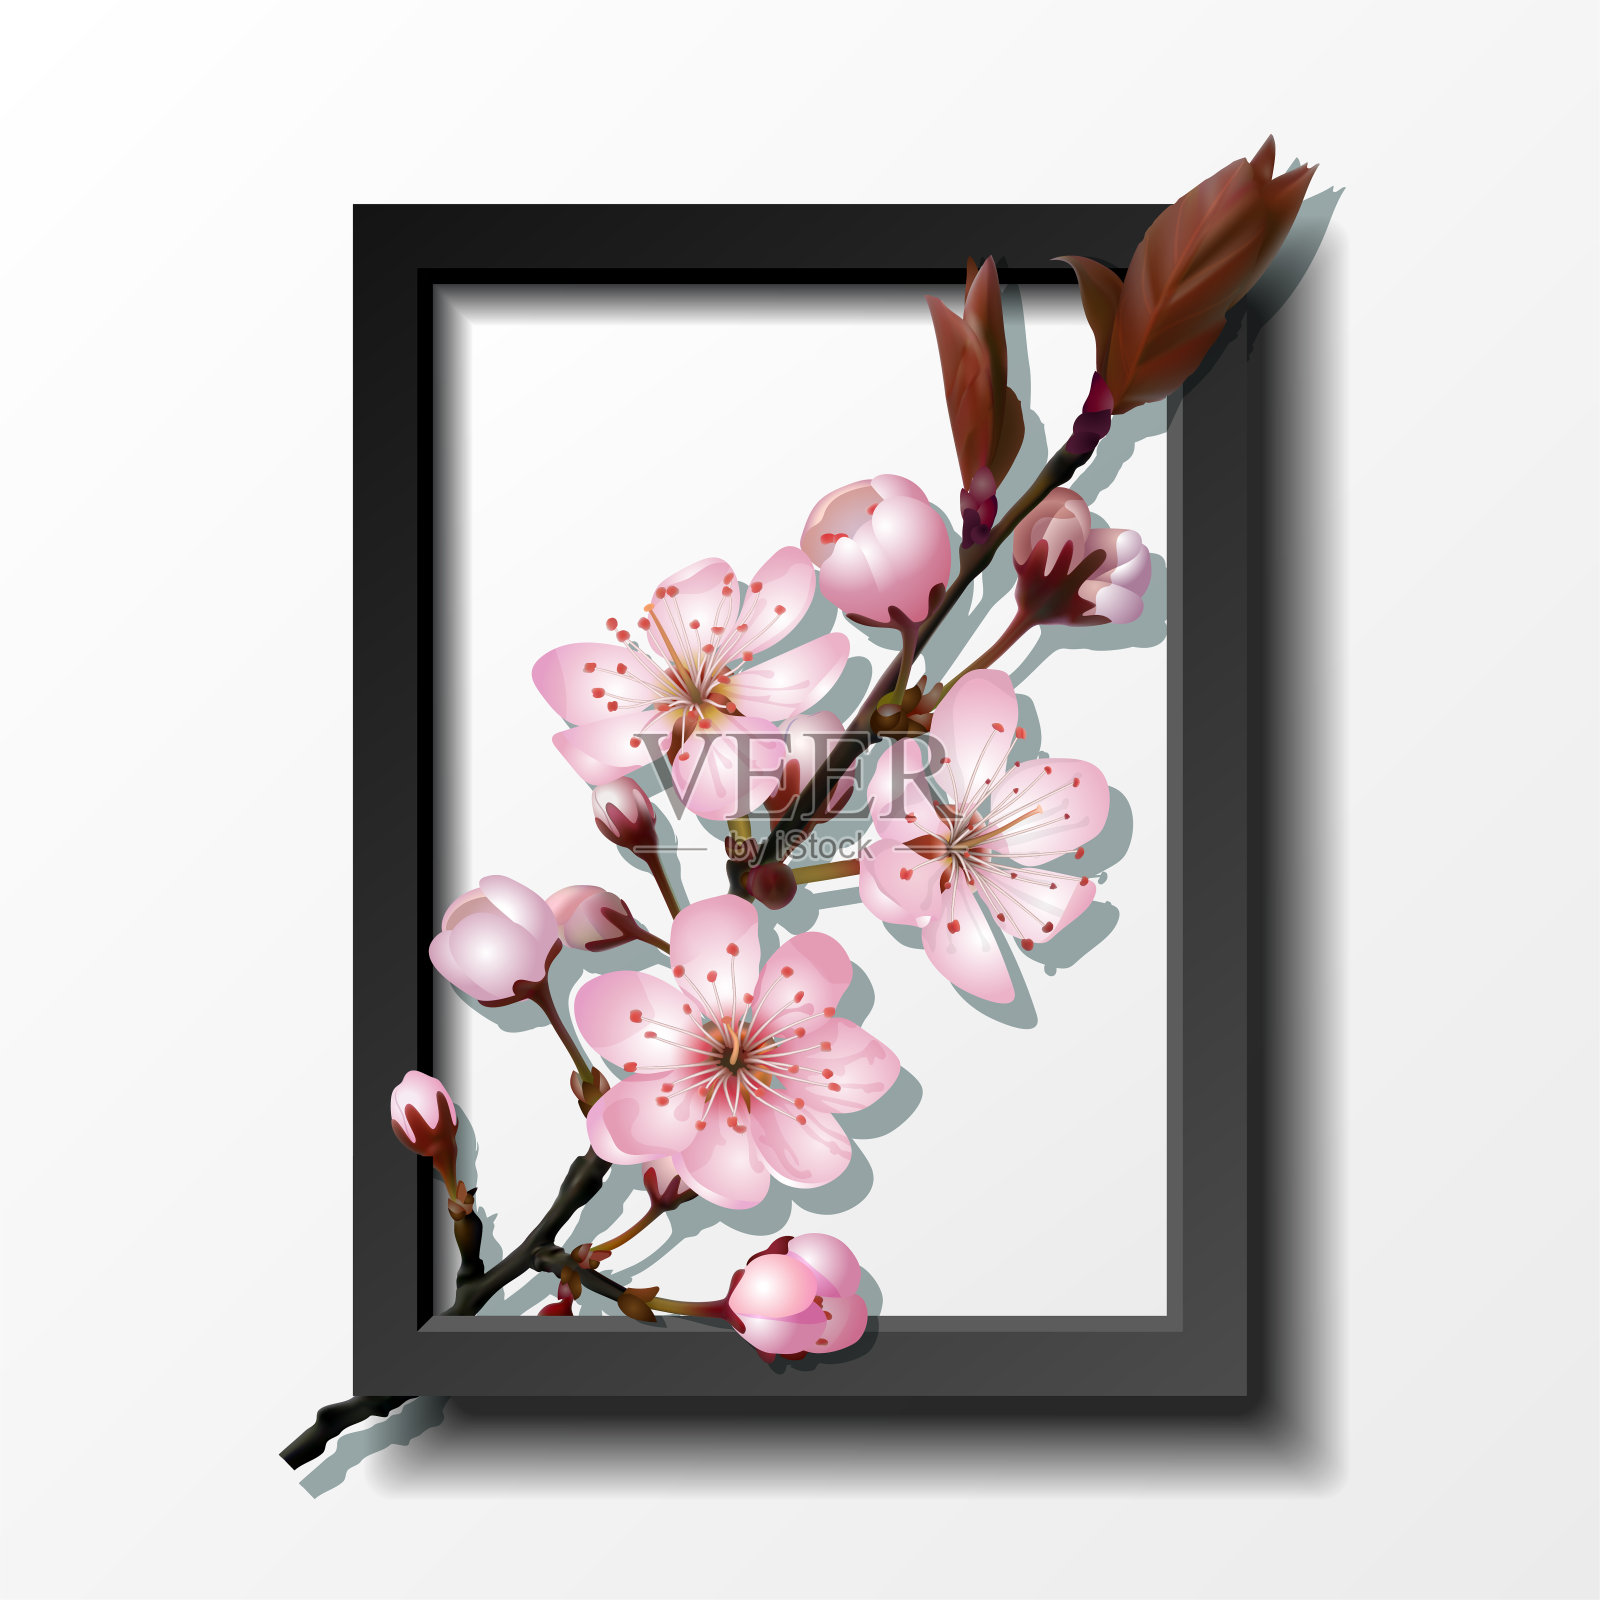 镜框内的粉红色樱花枝设计元素图片